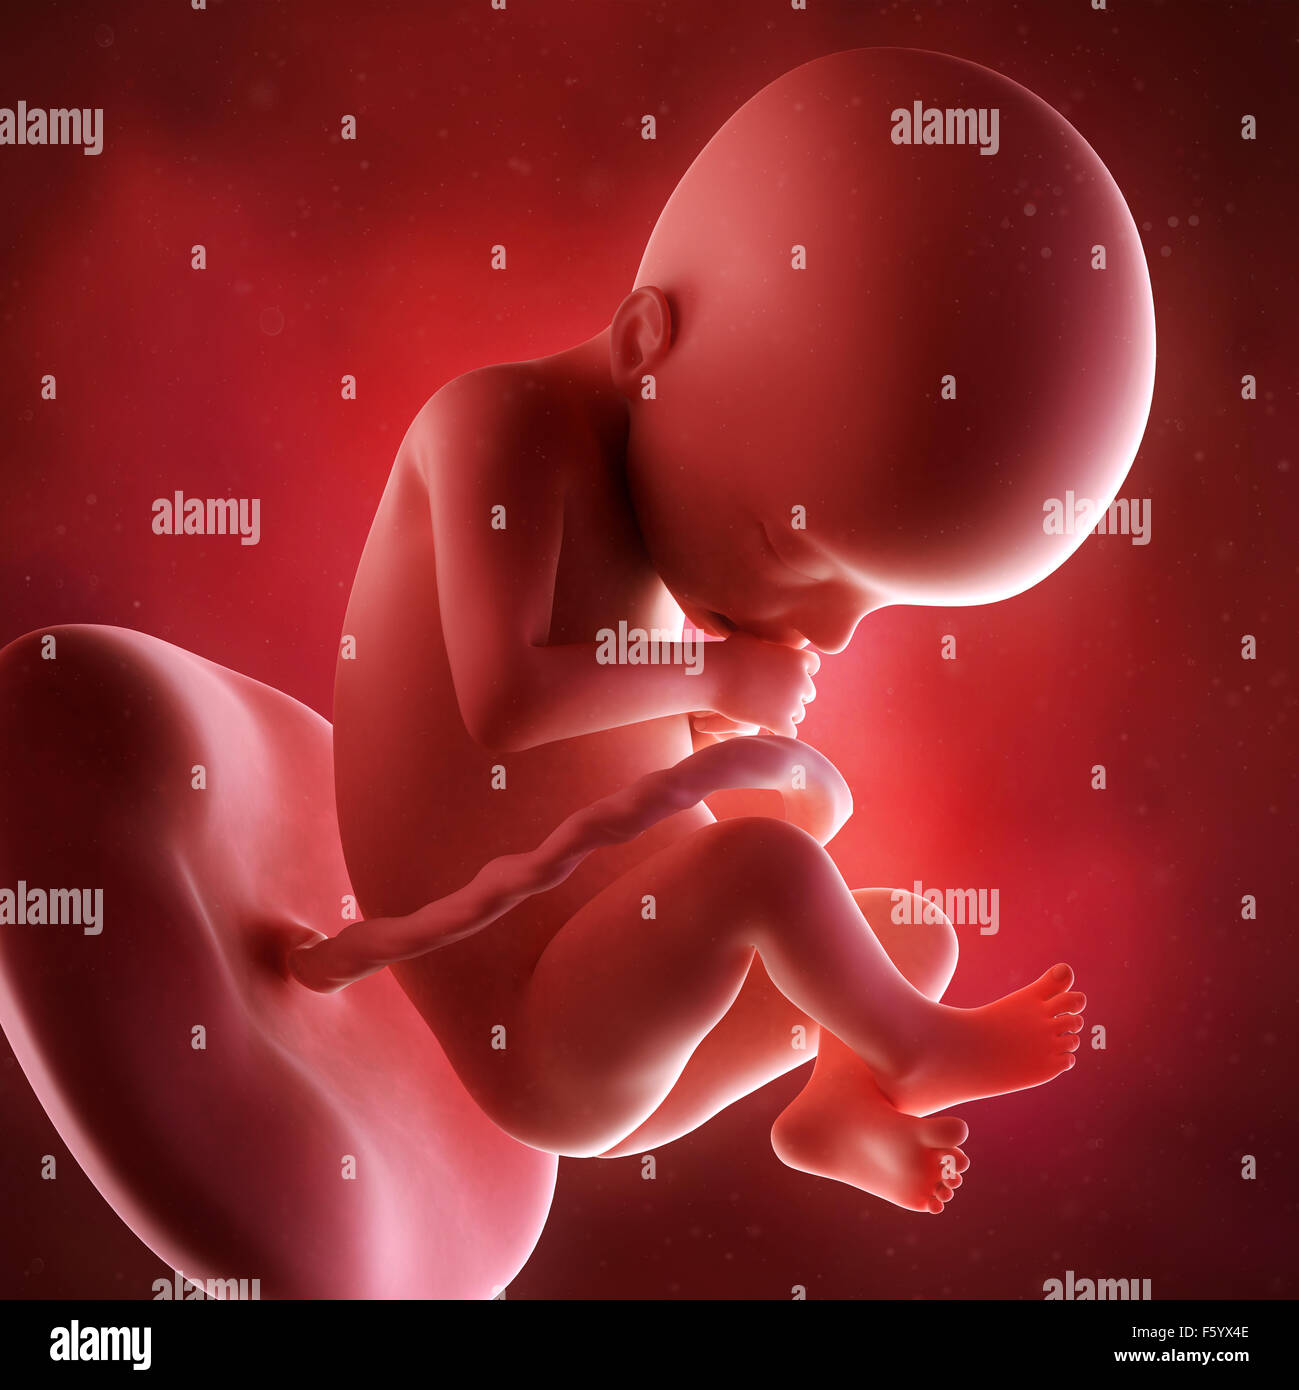 Précision médicale 3d illustration d'un foetus la semaine 22 Banque D'Images